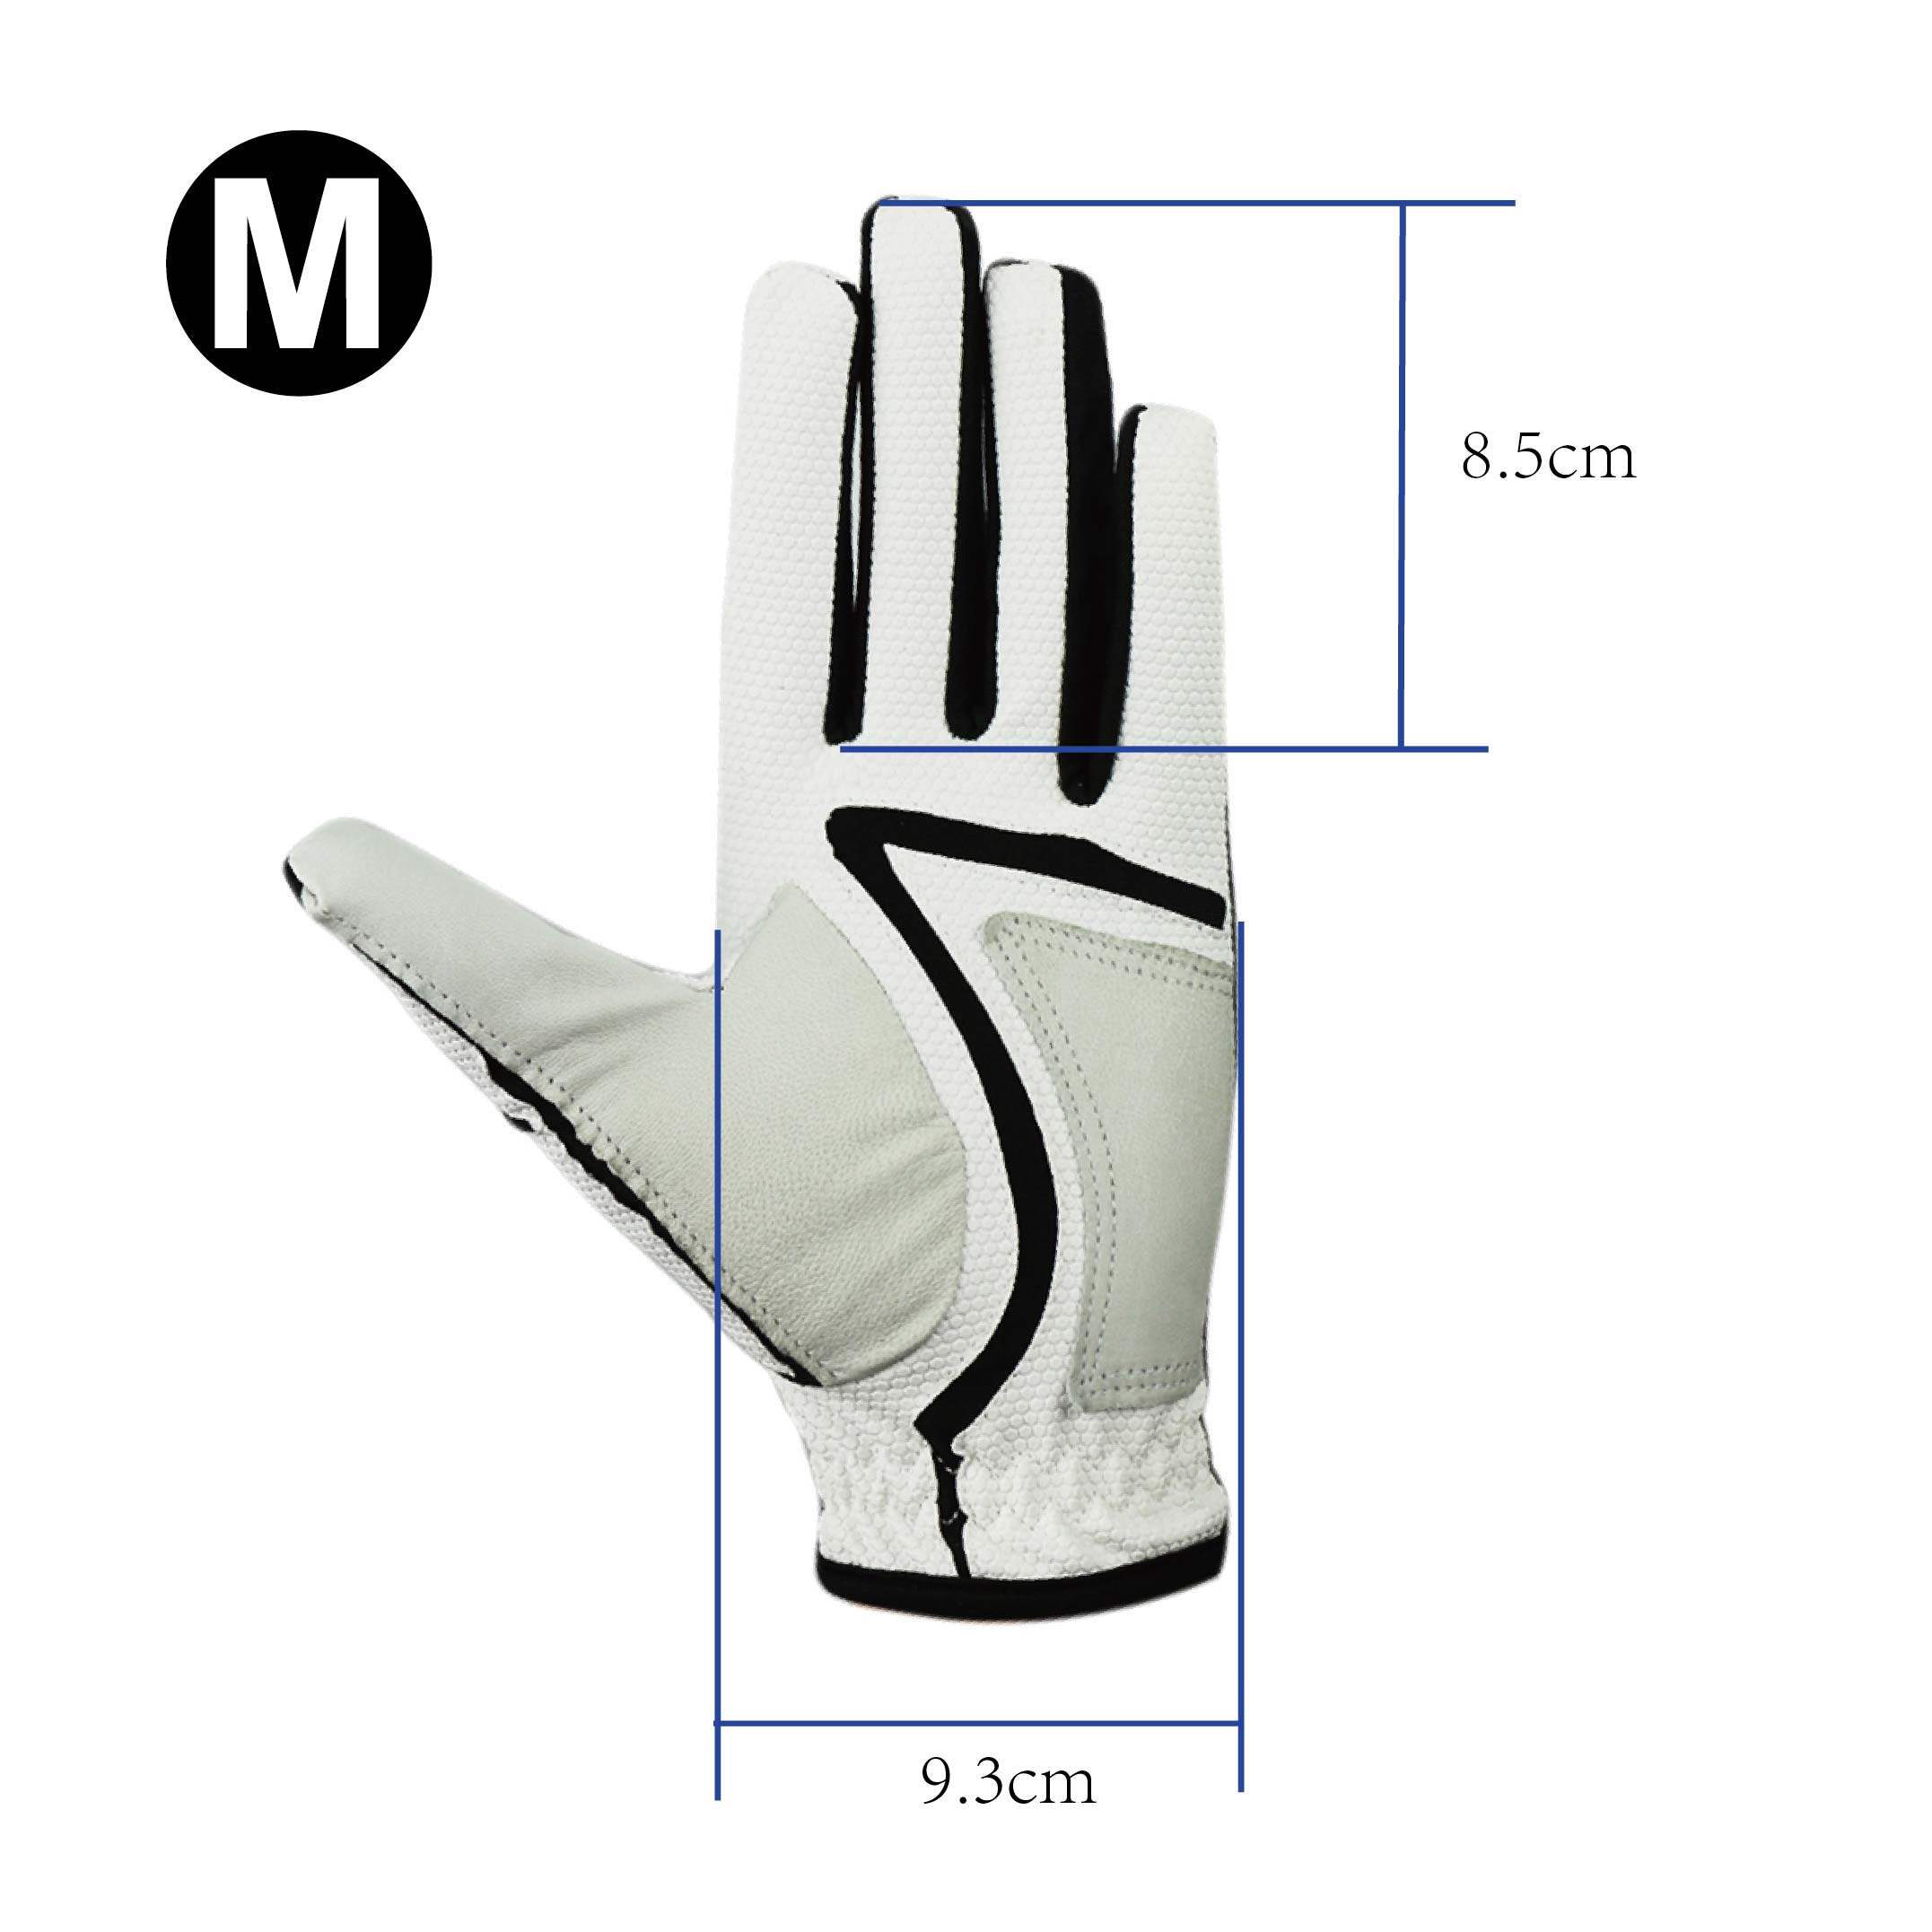 bulk buy golf gloves, wholesale golf gloves distributors, golf gloves wholesale manufacturers, golf gloves in bulk, mens golf glove with ball marker